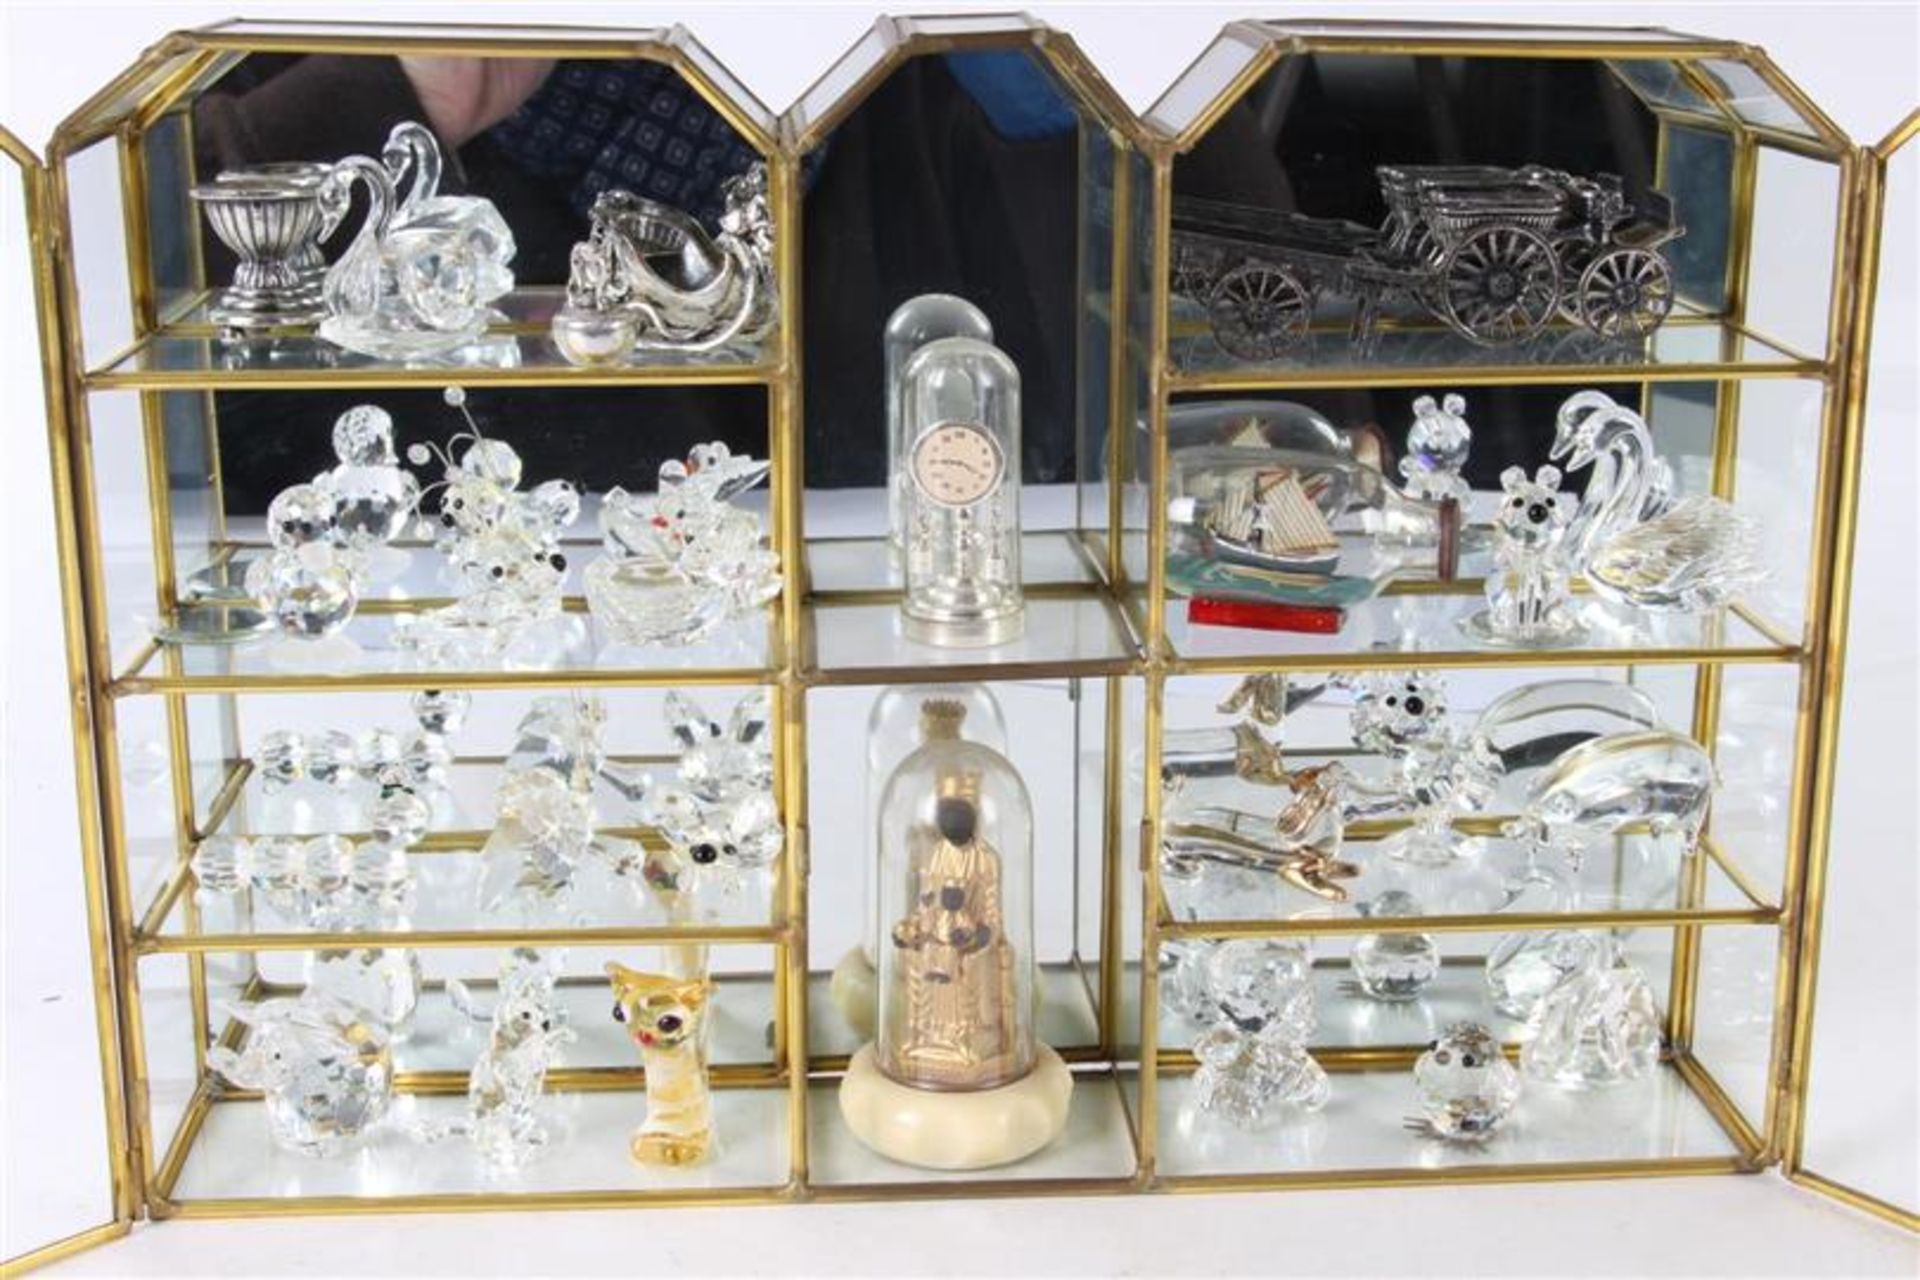 Glazen vitrinekastje met diverse miniaturen, waaronder glaskristal.